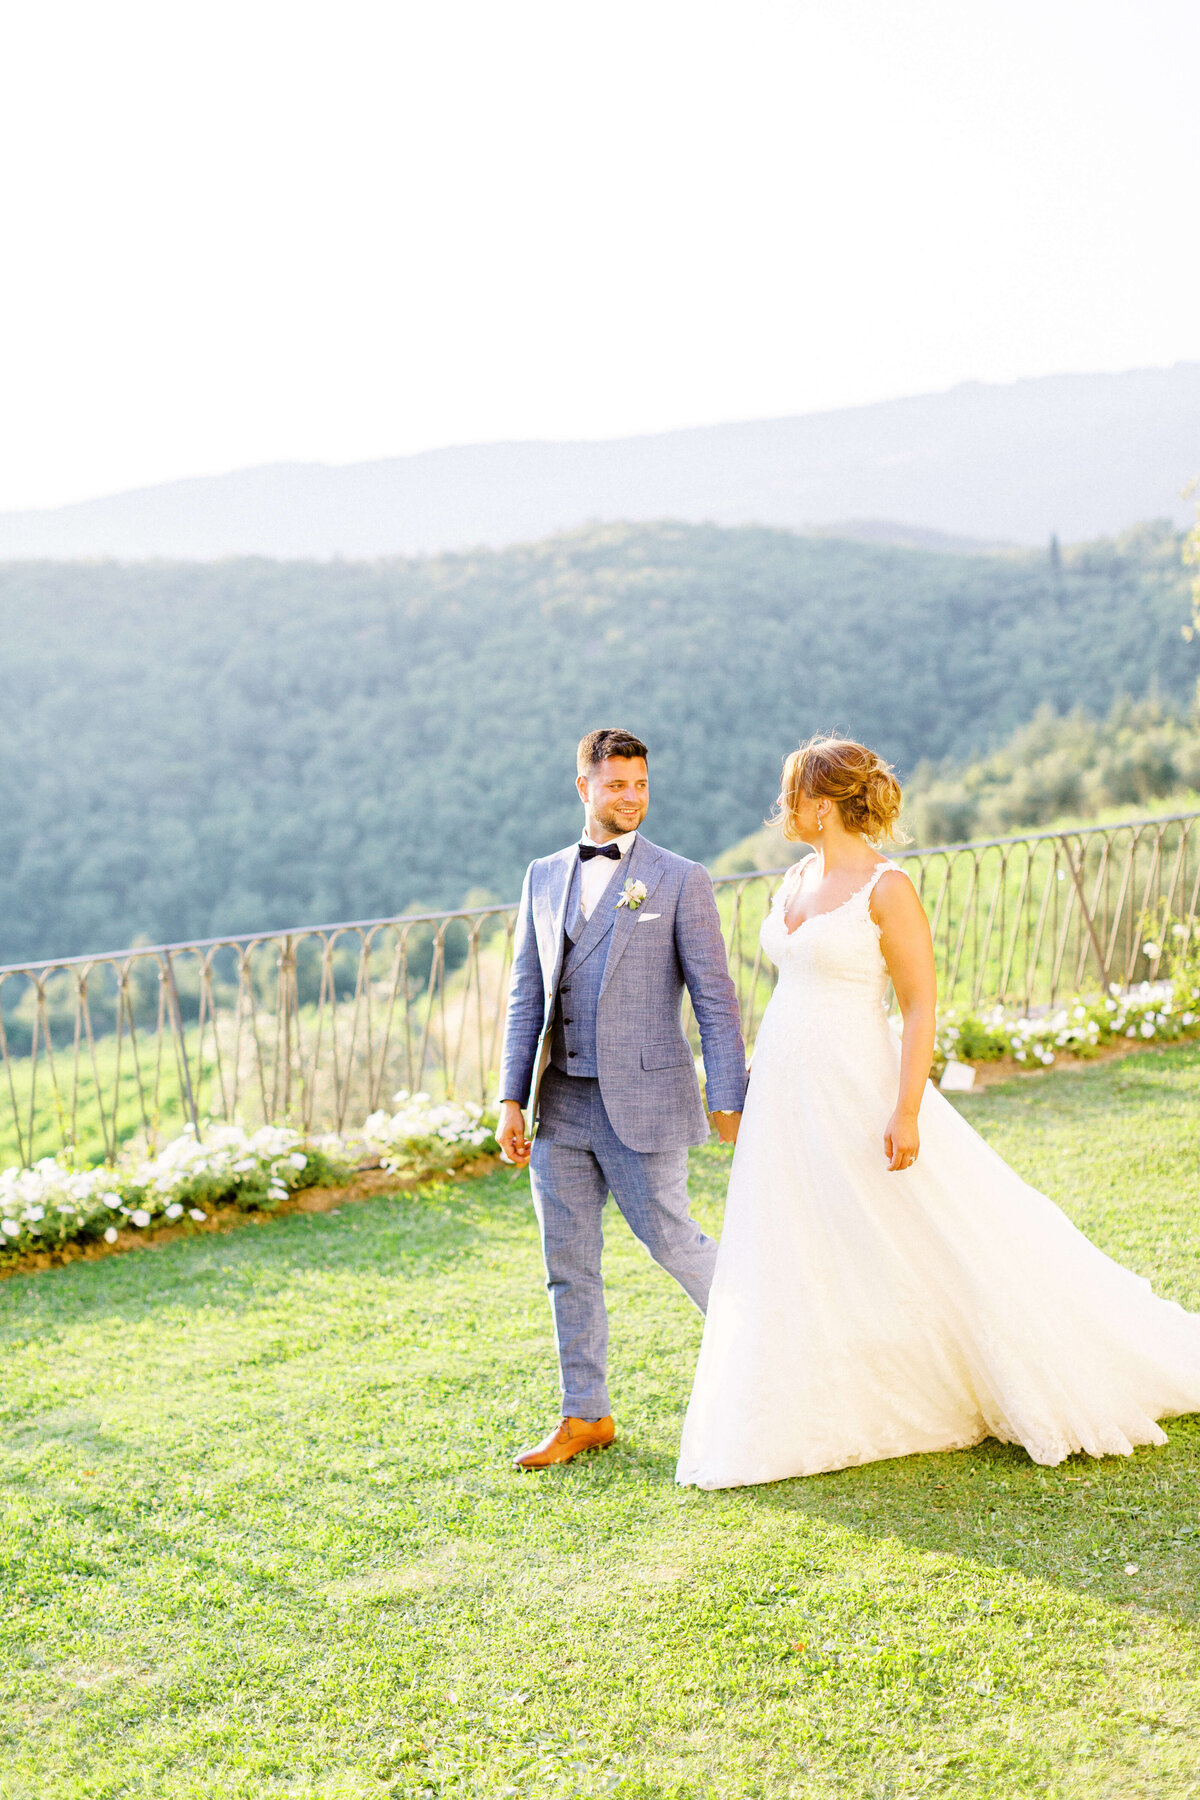 Wedding E&T - Tuscany - Italy 2019 28